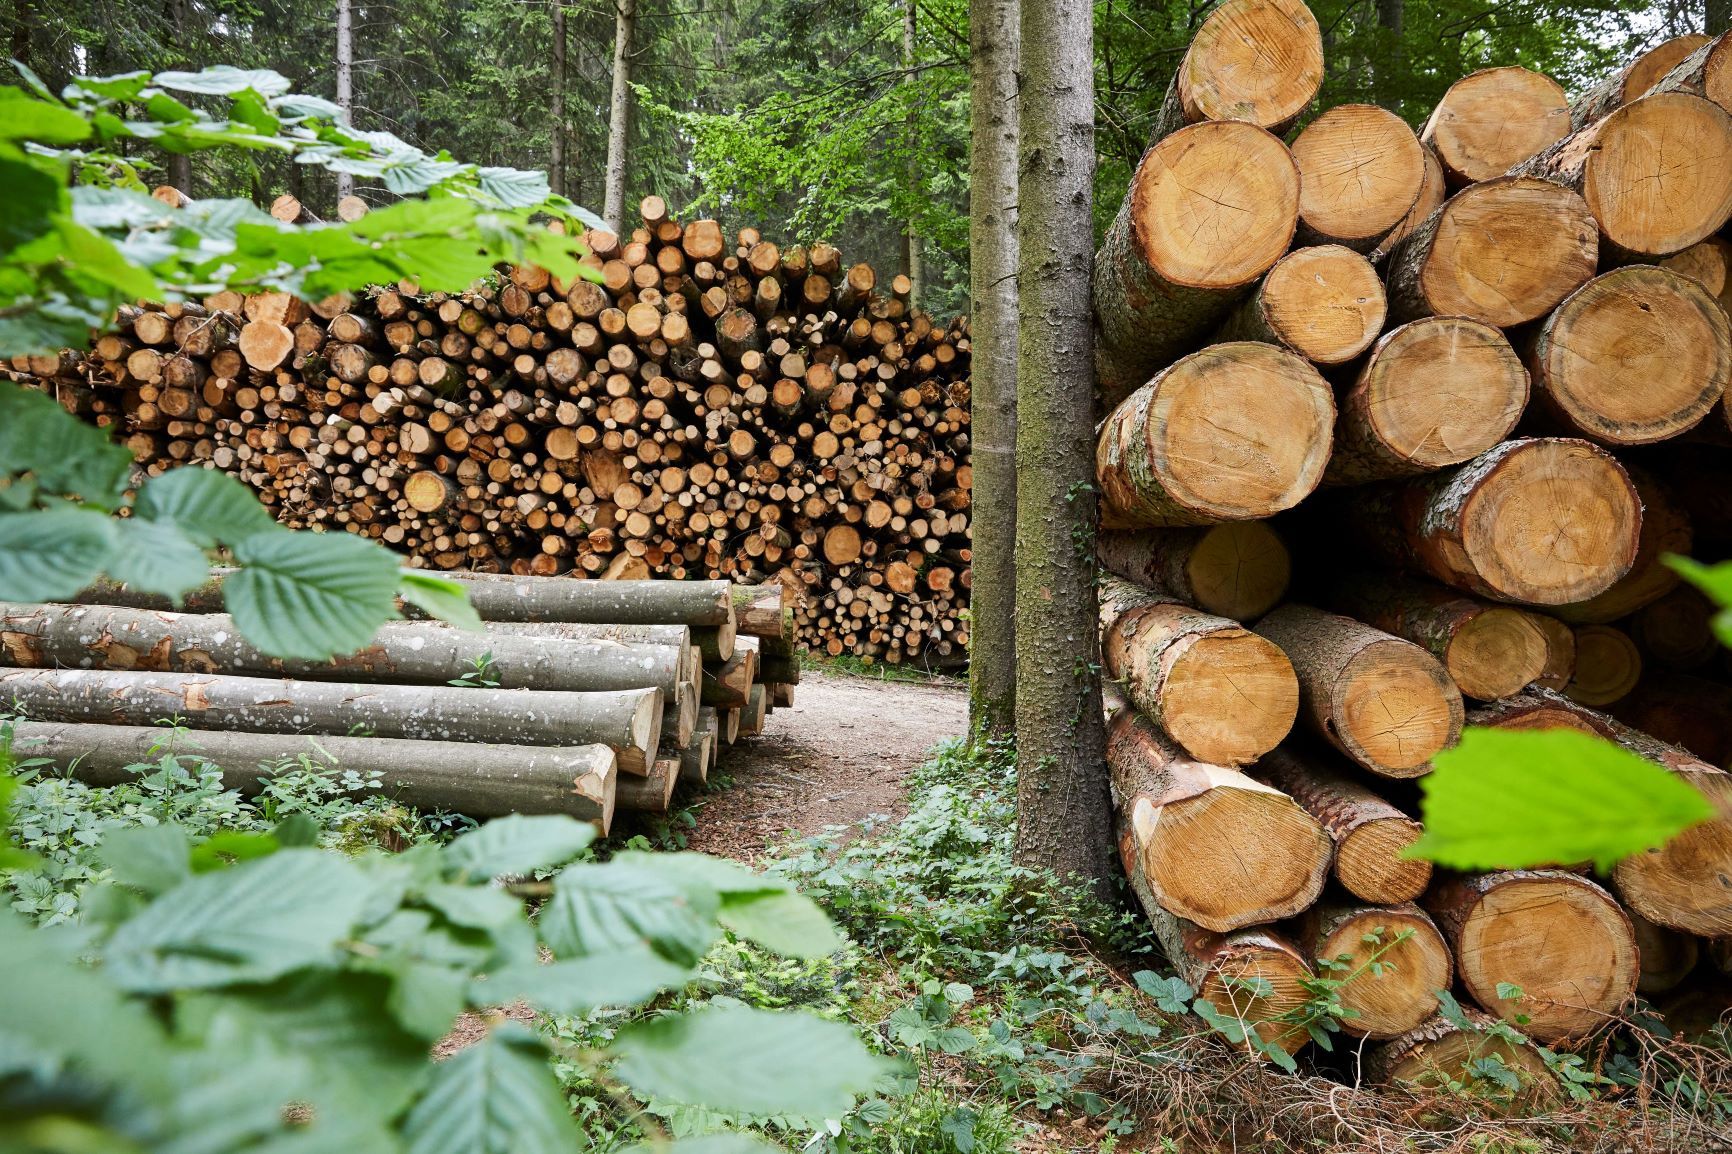 Photo ForêtSuisse/Alexander Jaquemet - De grandes quantités de bois endommagés doivent être évacuées des forêts suisses. Leur mise en valeur est problématique.